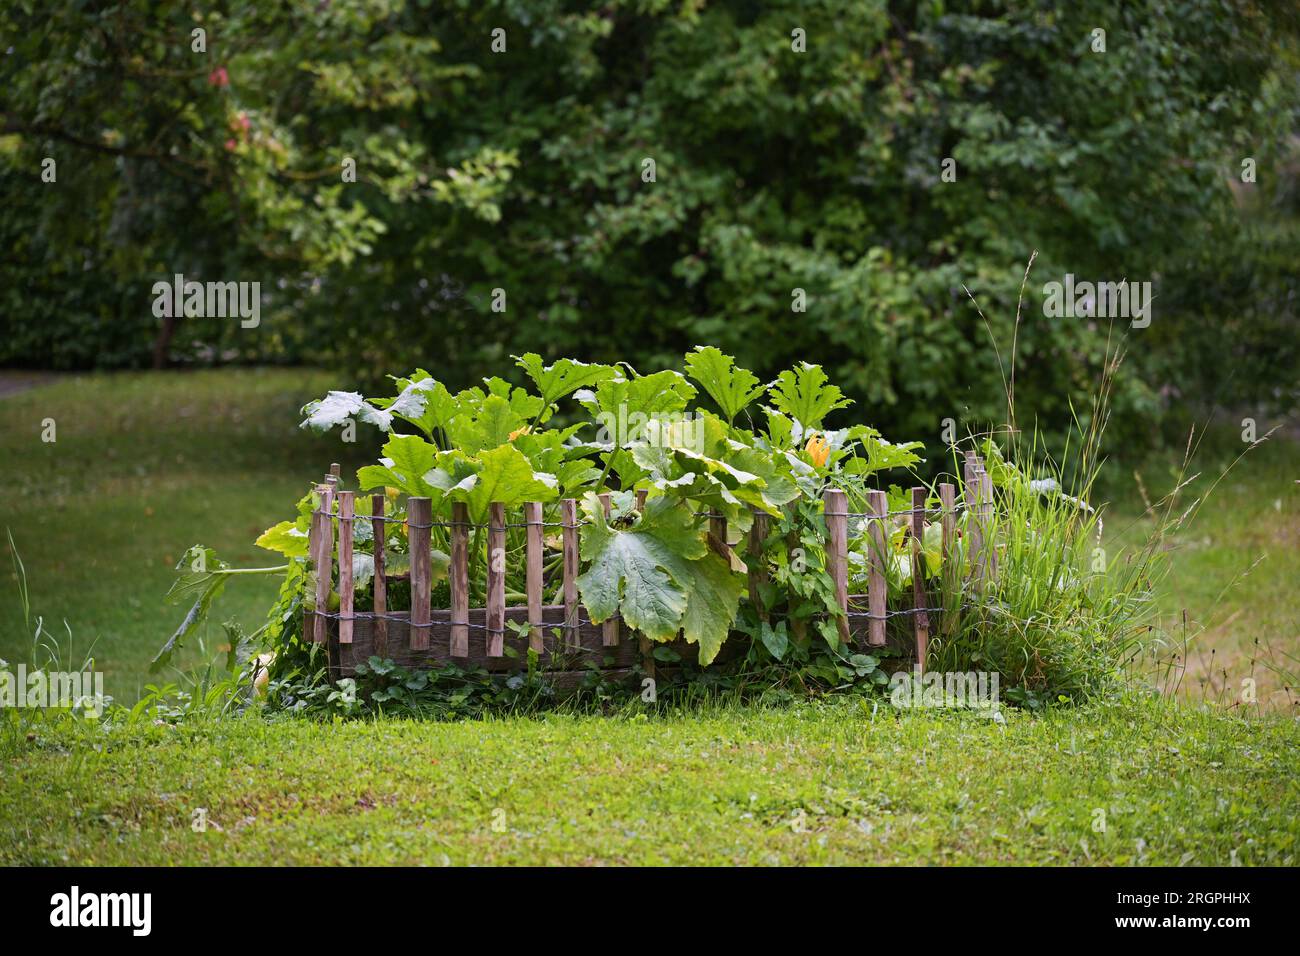 Lit de légumes surélevé, bordé d'une clôture en bois dans la pelouse dans un jardin de campagne, dans lequel poussent des plantes de courgettes avec des fleurs oranges et une grande le verte Banque D'Images